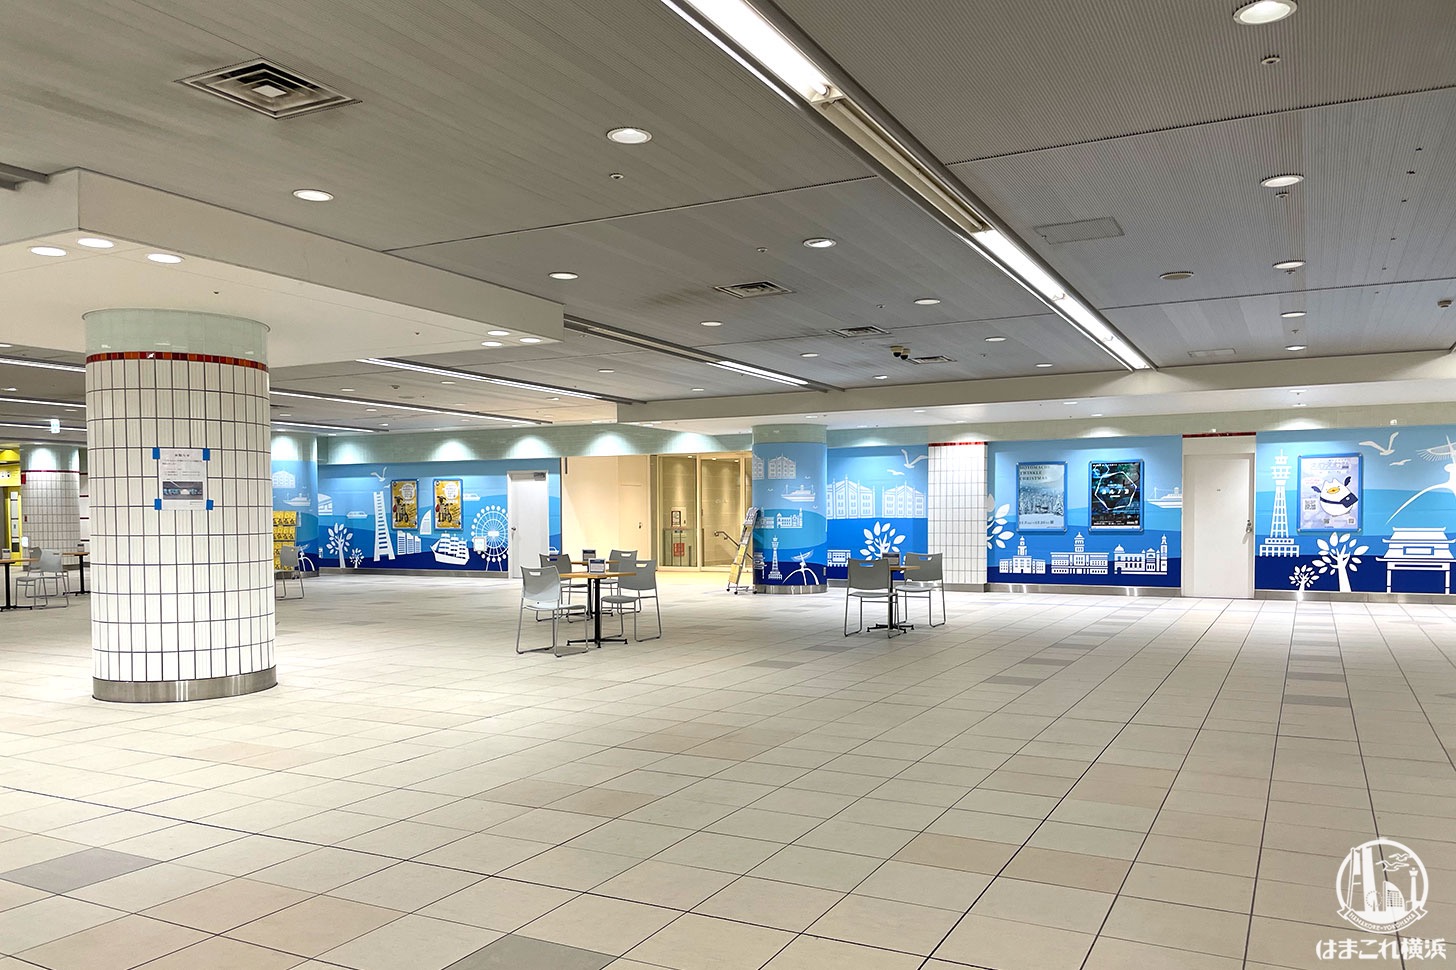 横浜駅地下2階“南北連絡通路”のJR横浜タワー接続口が開放！みなとみらい線そば